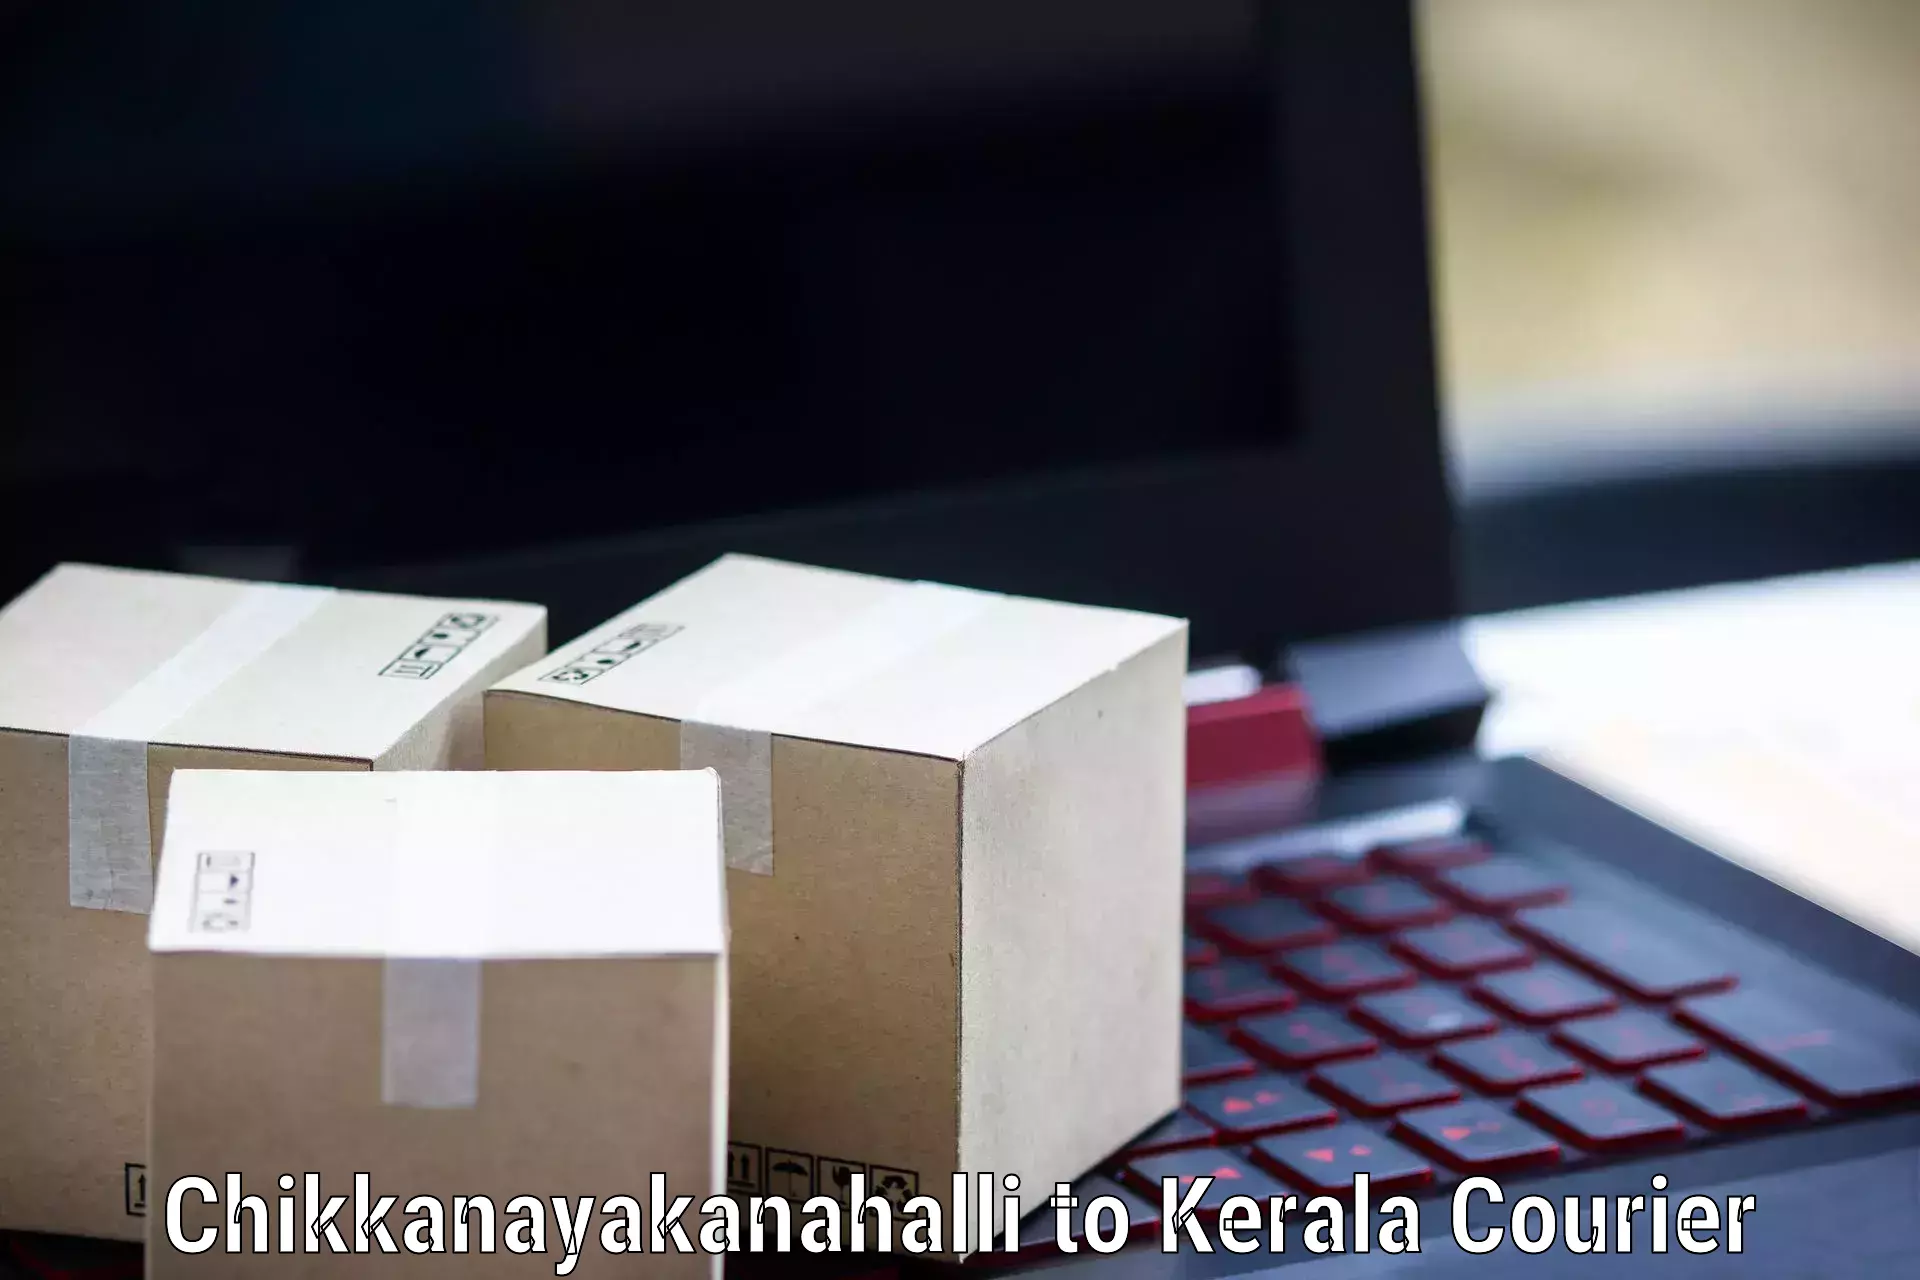 Professional courier handling Chikkanayakanahalli to Kattappana